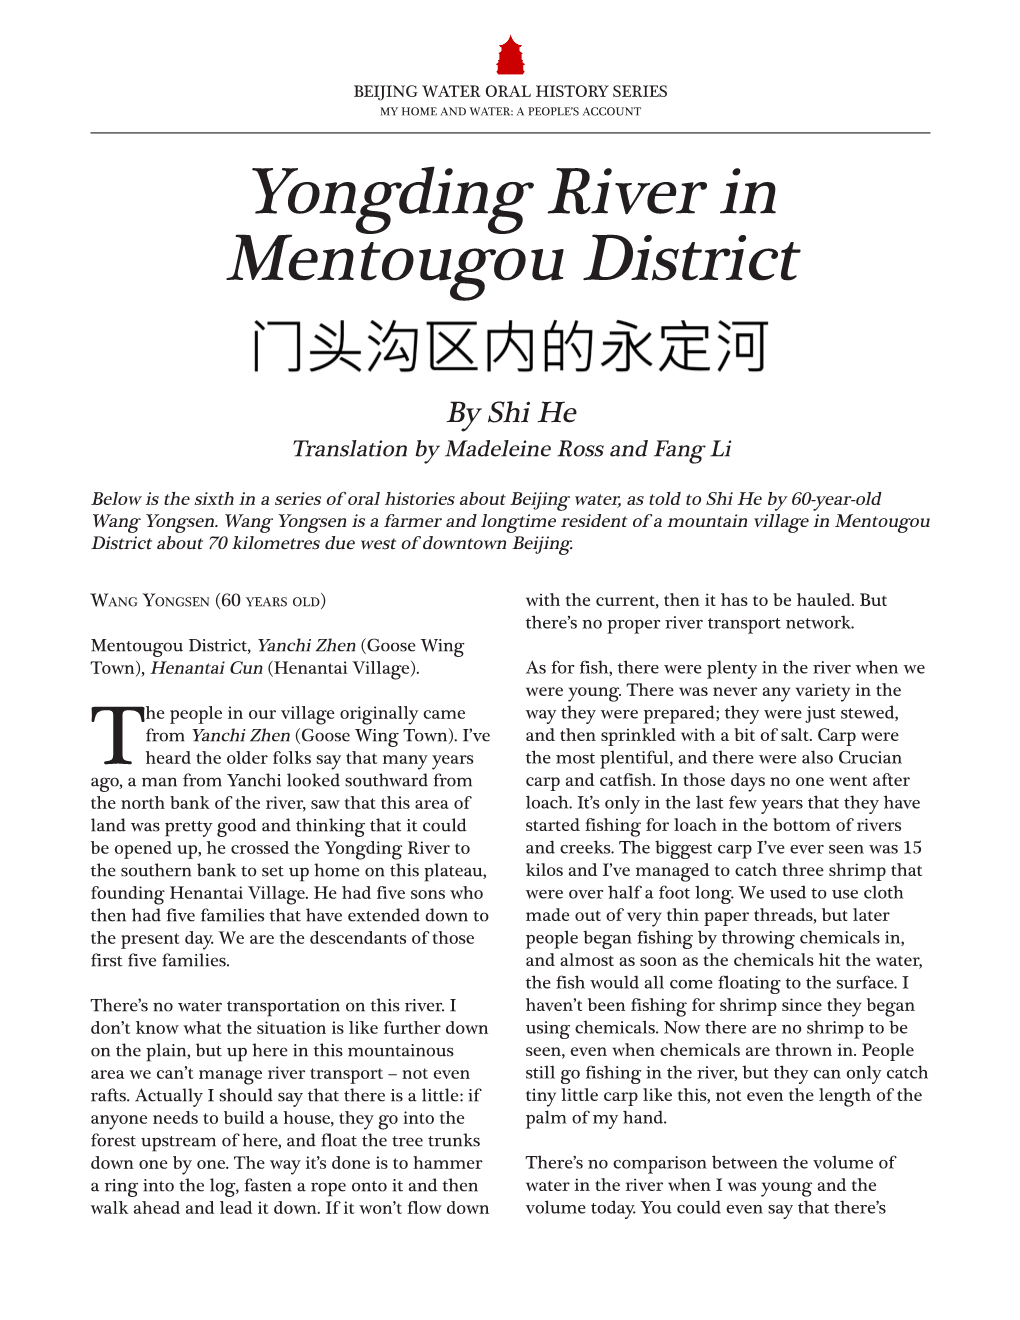 Yongding River in Mentougou District